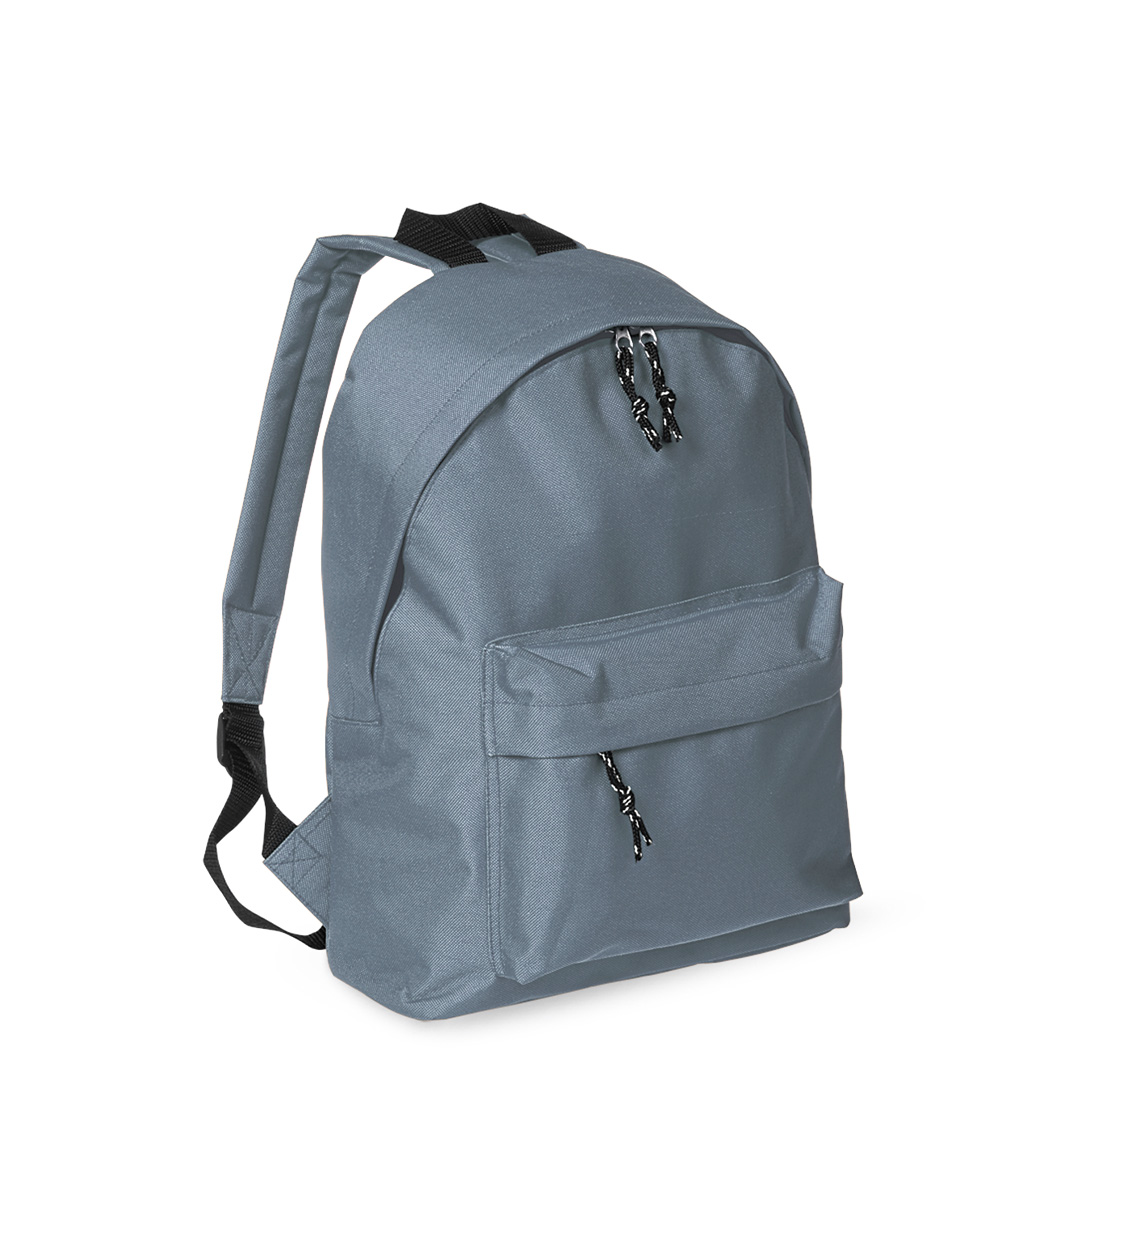 Discovery backpack - Grau